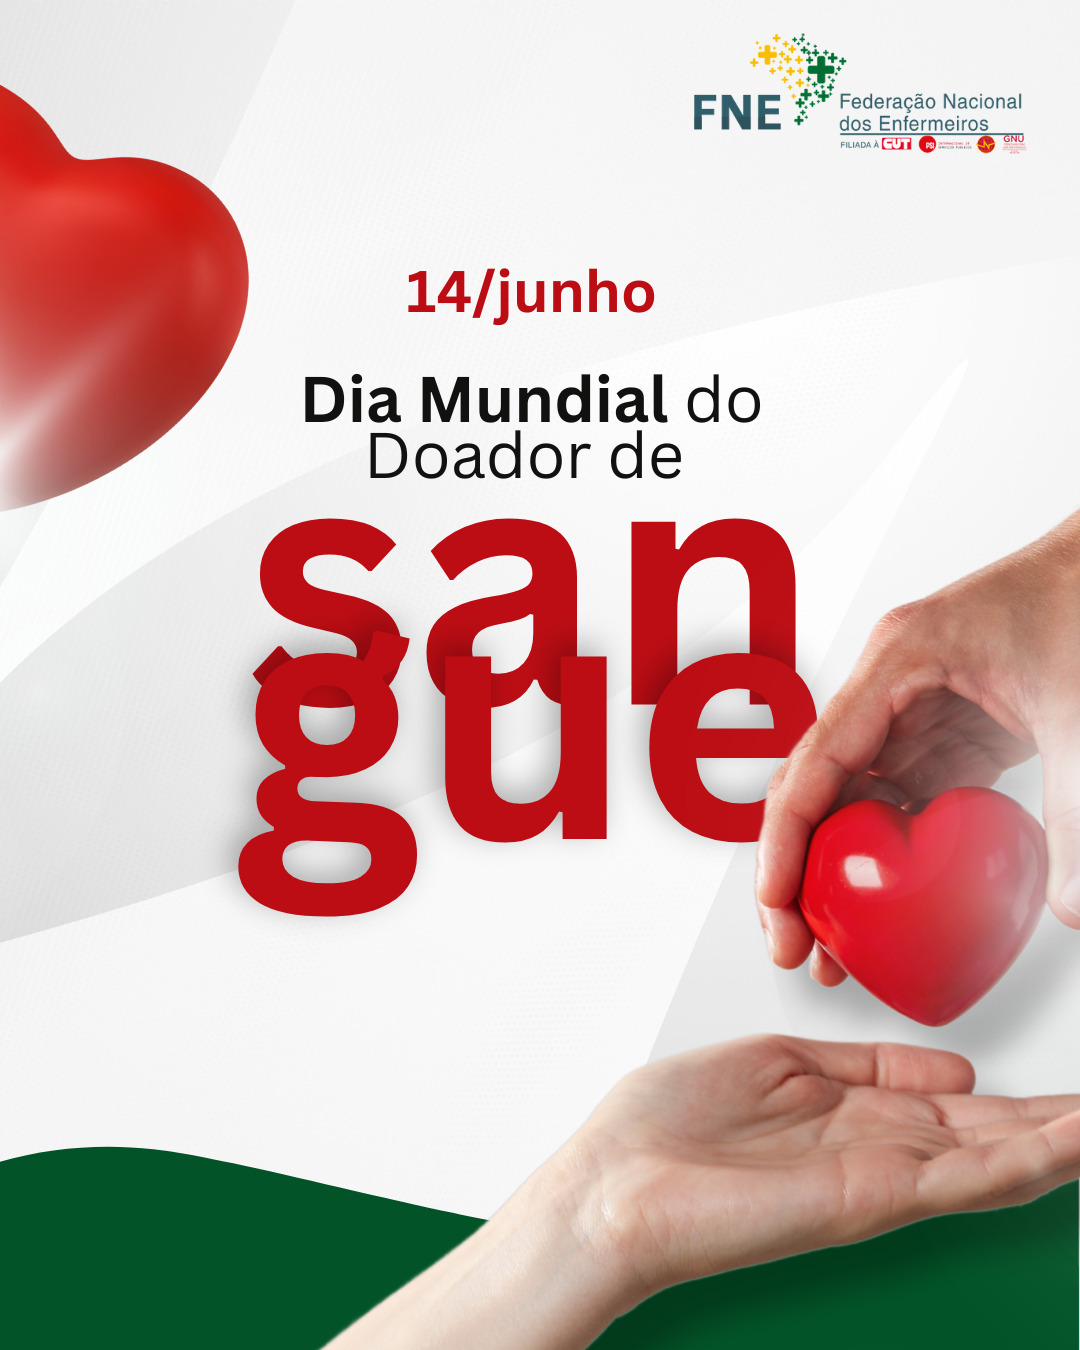 14 de junho - Dia Mundial do Doador de Sangue